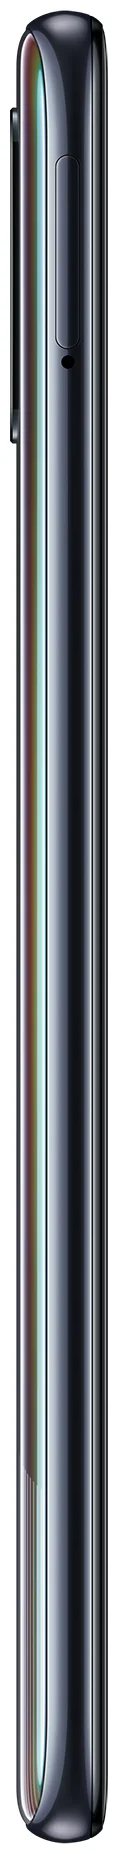 Samsung Galaxy A51 64GB - процессор: Samsung Exynos 9611